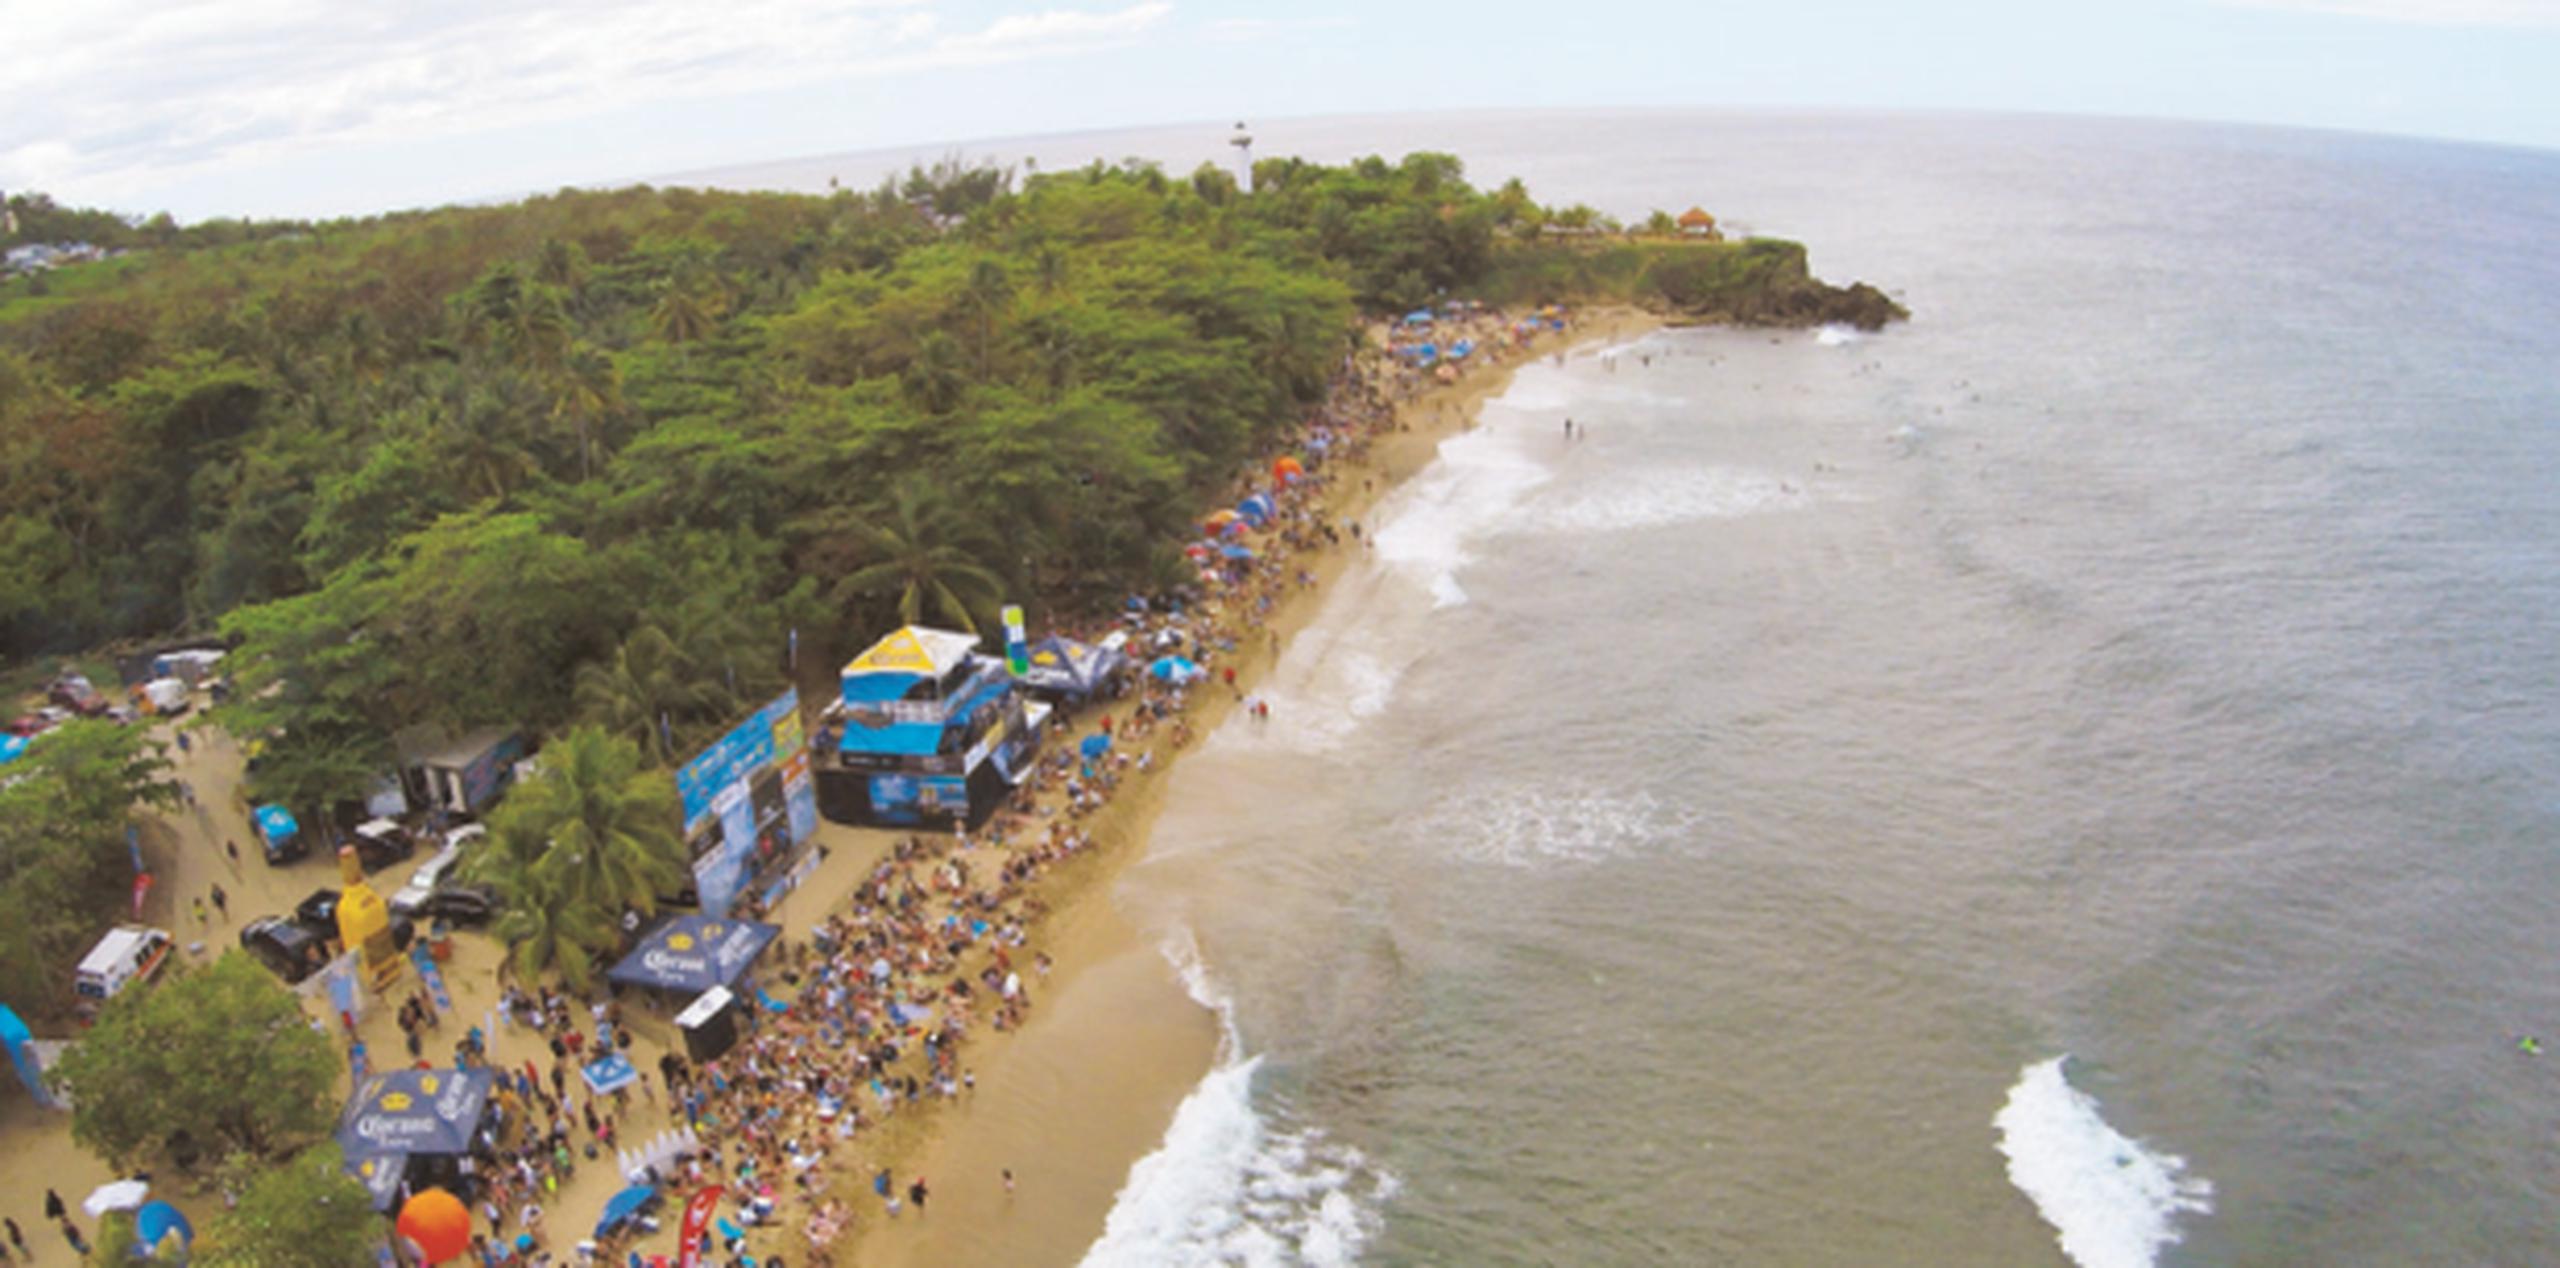 El municipio de Rincón es uno de los más visitados por surfers por la cantidad de playas para practicar este deporte. (Archivo)